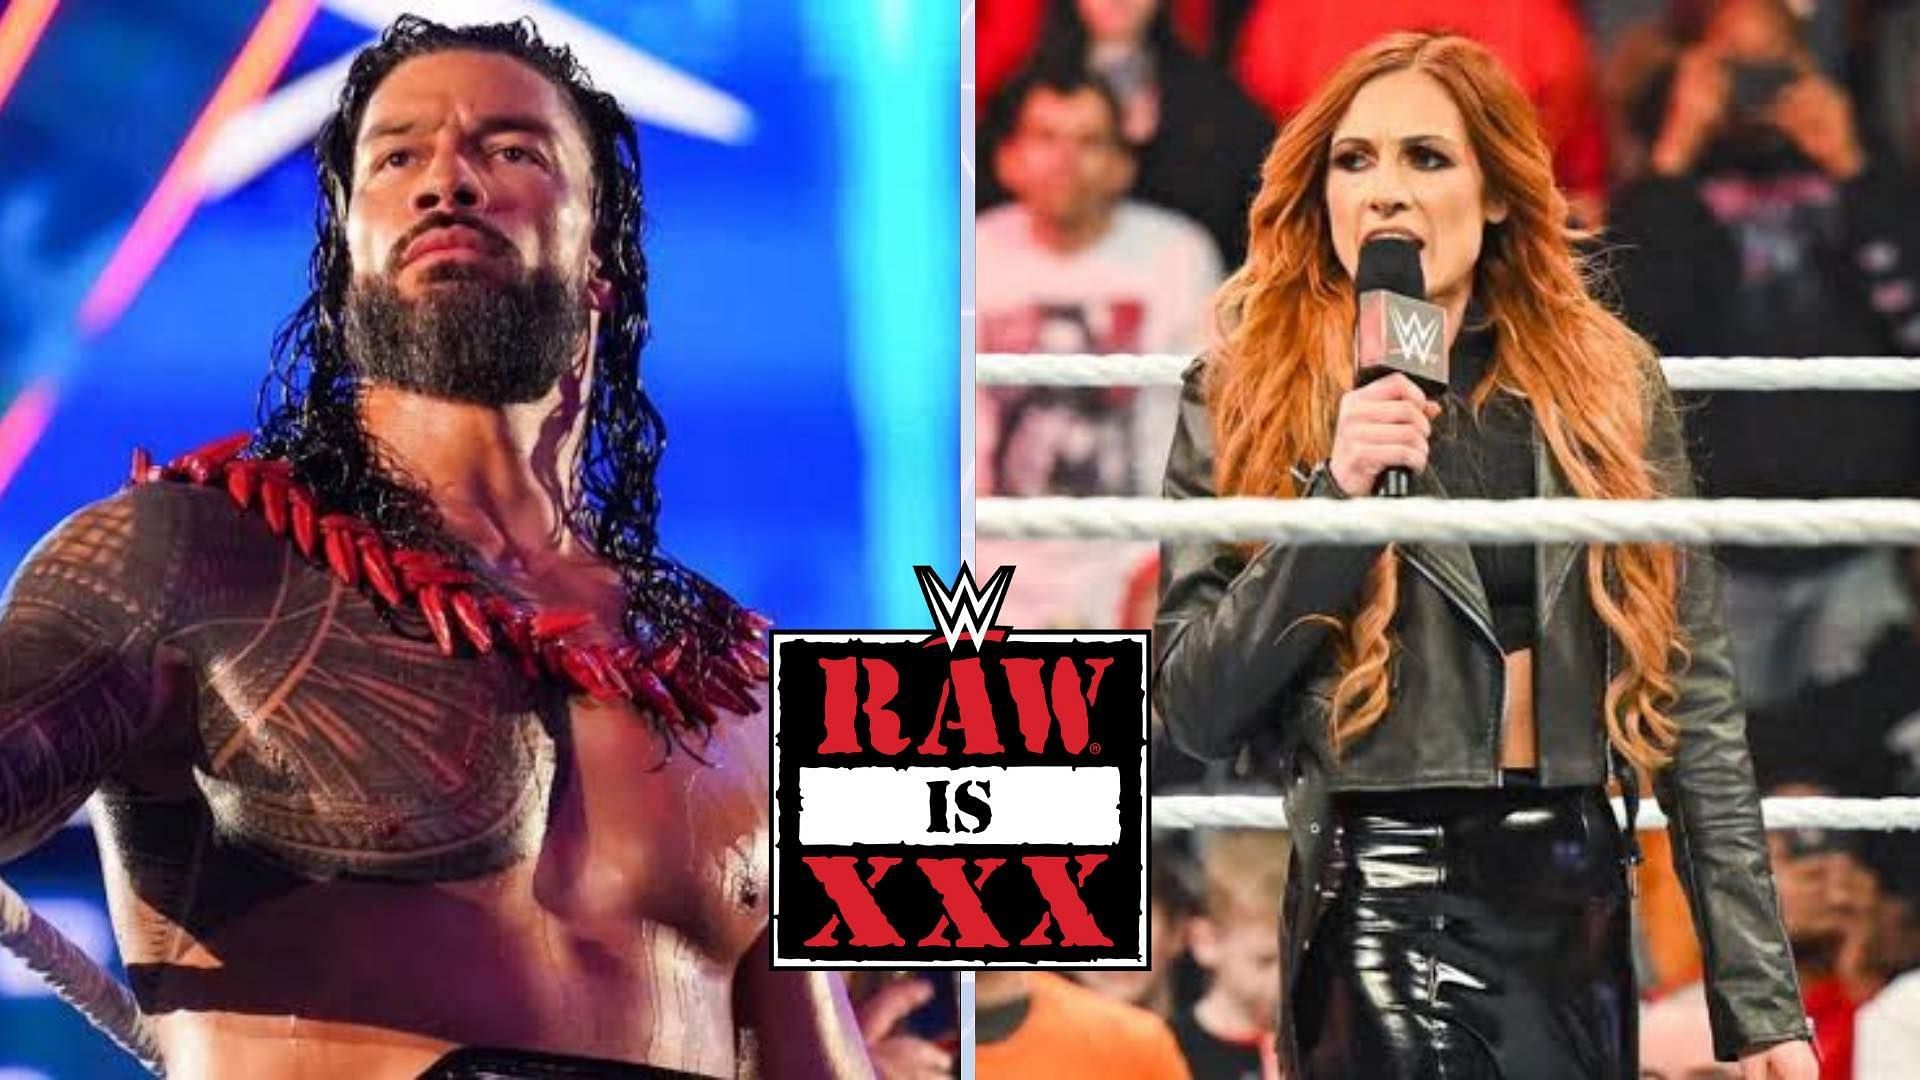 WWE Superstars Roman Reigns and Becky Lynch